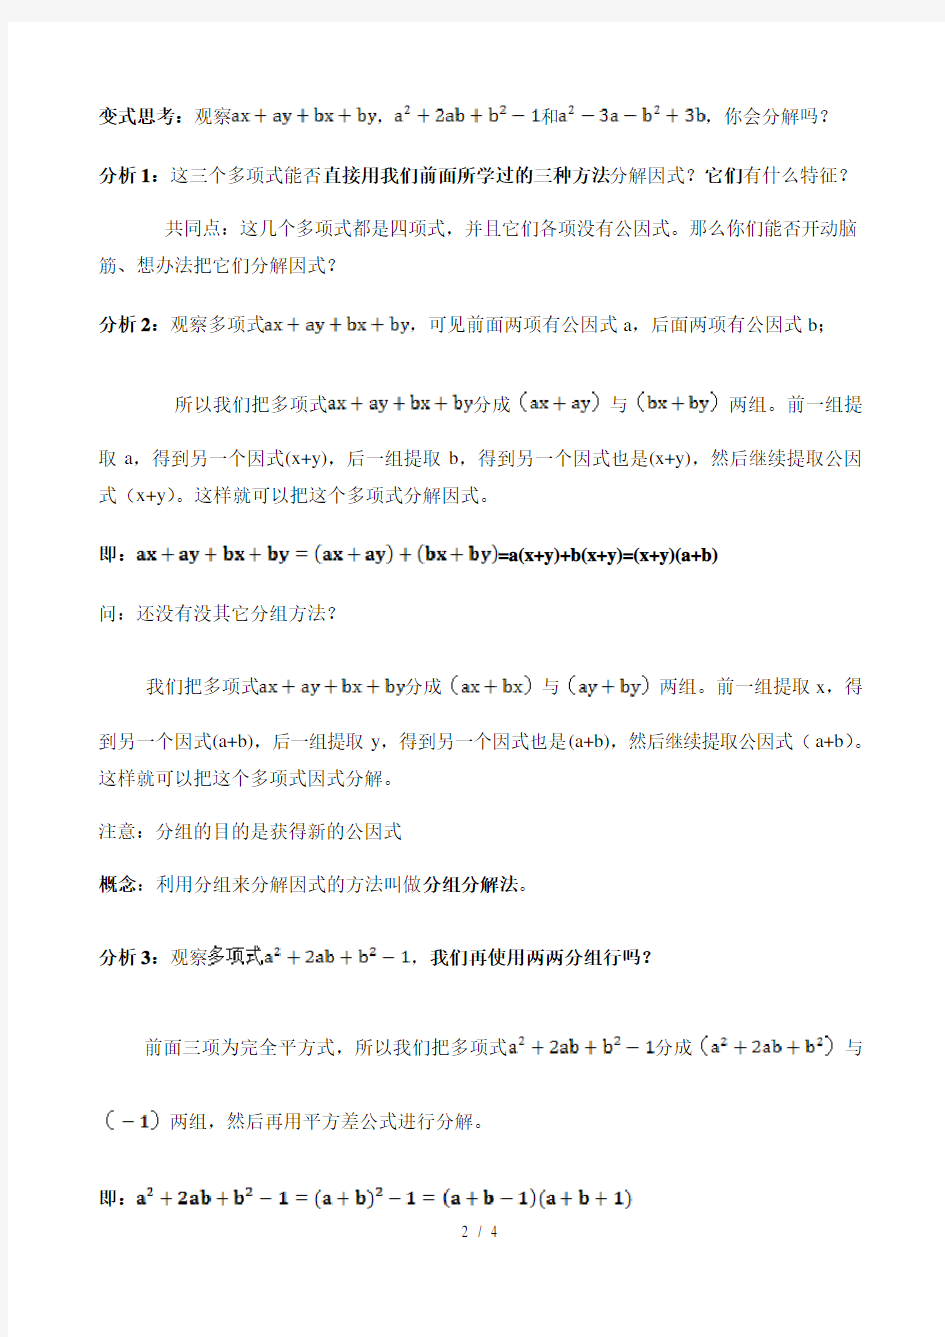 沪教版(上海)初中数学七年级第一学期 9.16 分组分解法 教案  (1)